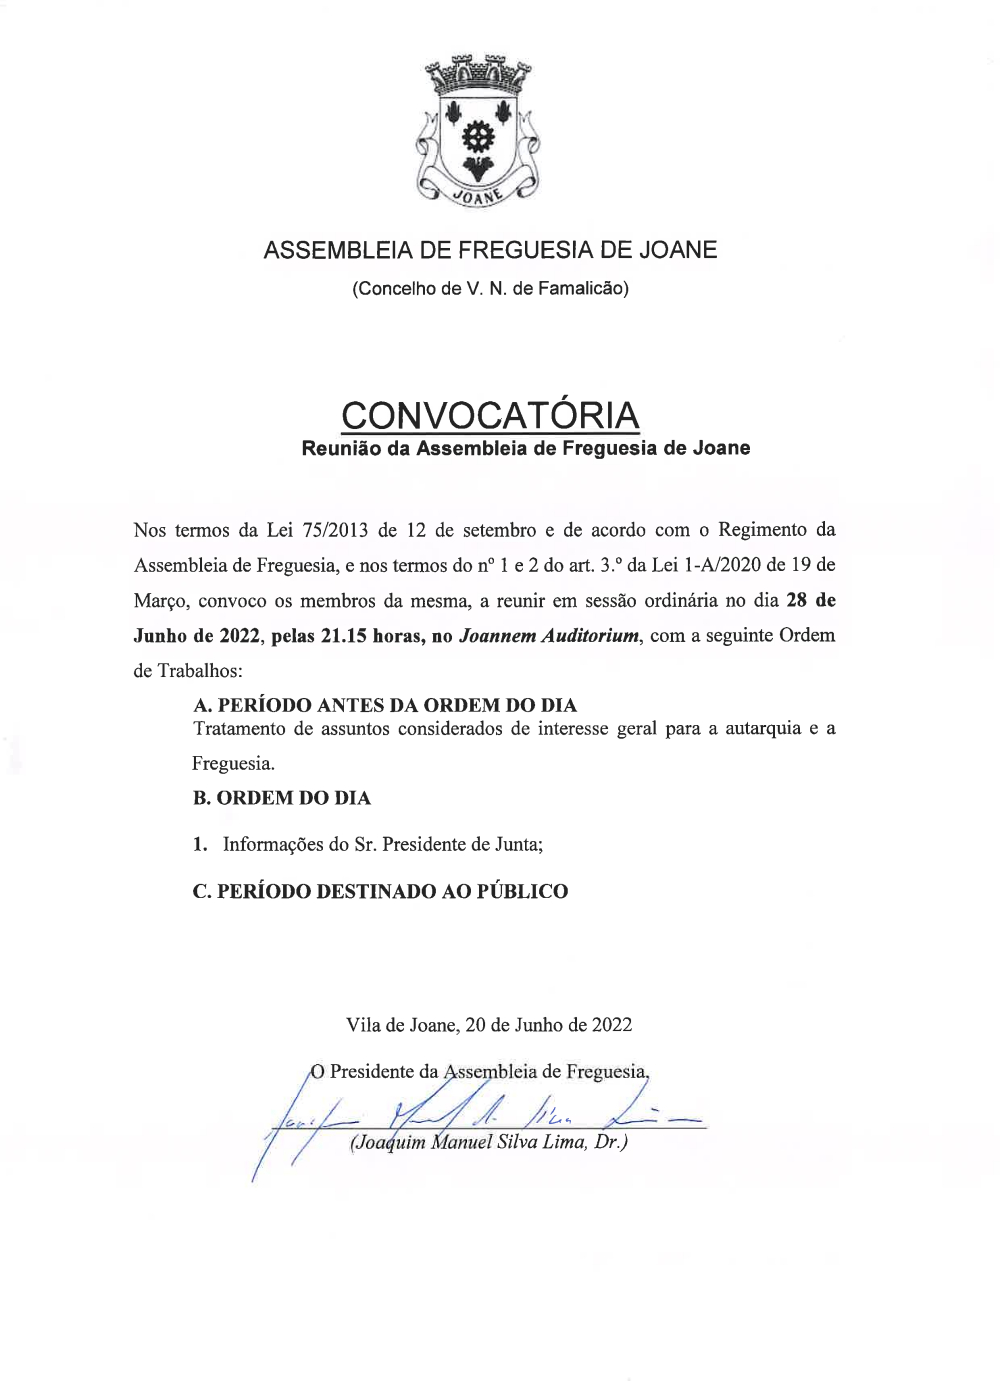 Convocatria da Assembleia de Freguesia - Junho 2022